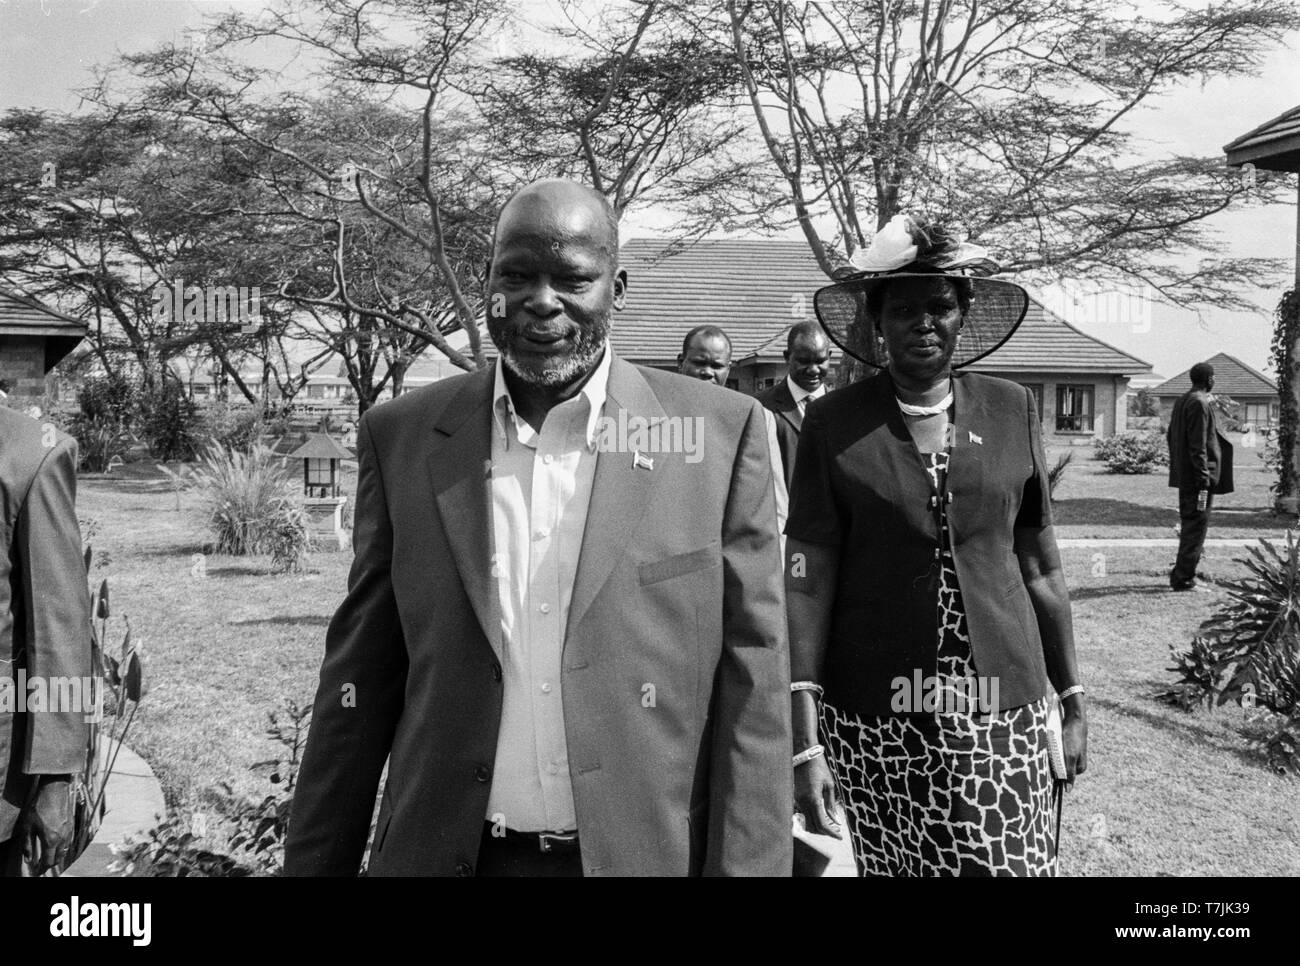 Der späte Dr. John Garang de Mabior wurde die erste Vizepräsidentin der Süden, der erste Präsident des Südsudan. Er führte auch die SPLA (Sudan People's Liberation Army) während dem Bürgerkrieg im Sudan. Stockfoto